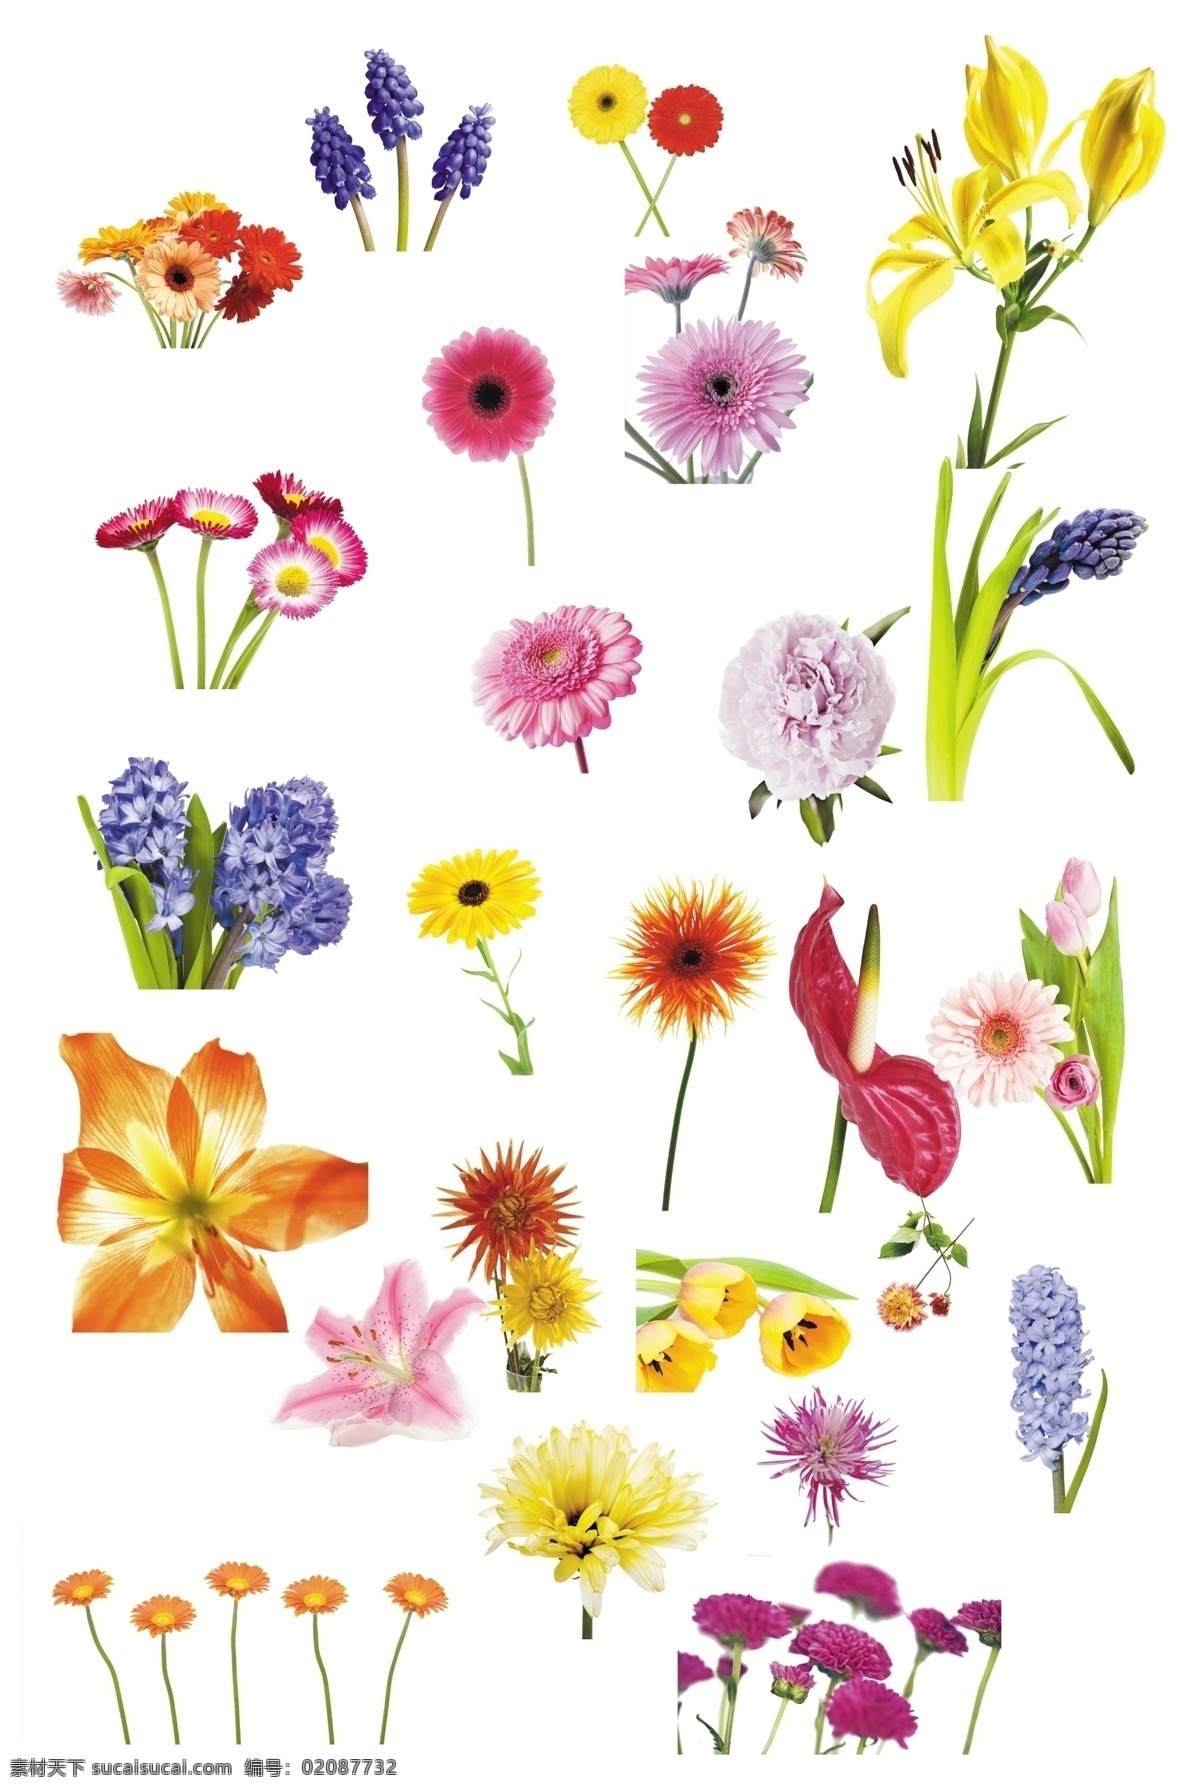 各种鲜花集锦 鲜花 各种鲜花 鲜花集锦 单层鲜花 花 生物世界 花草